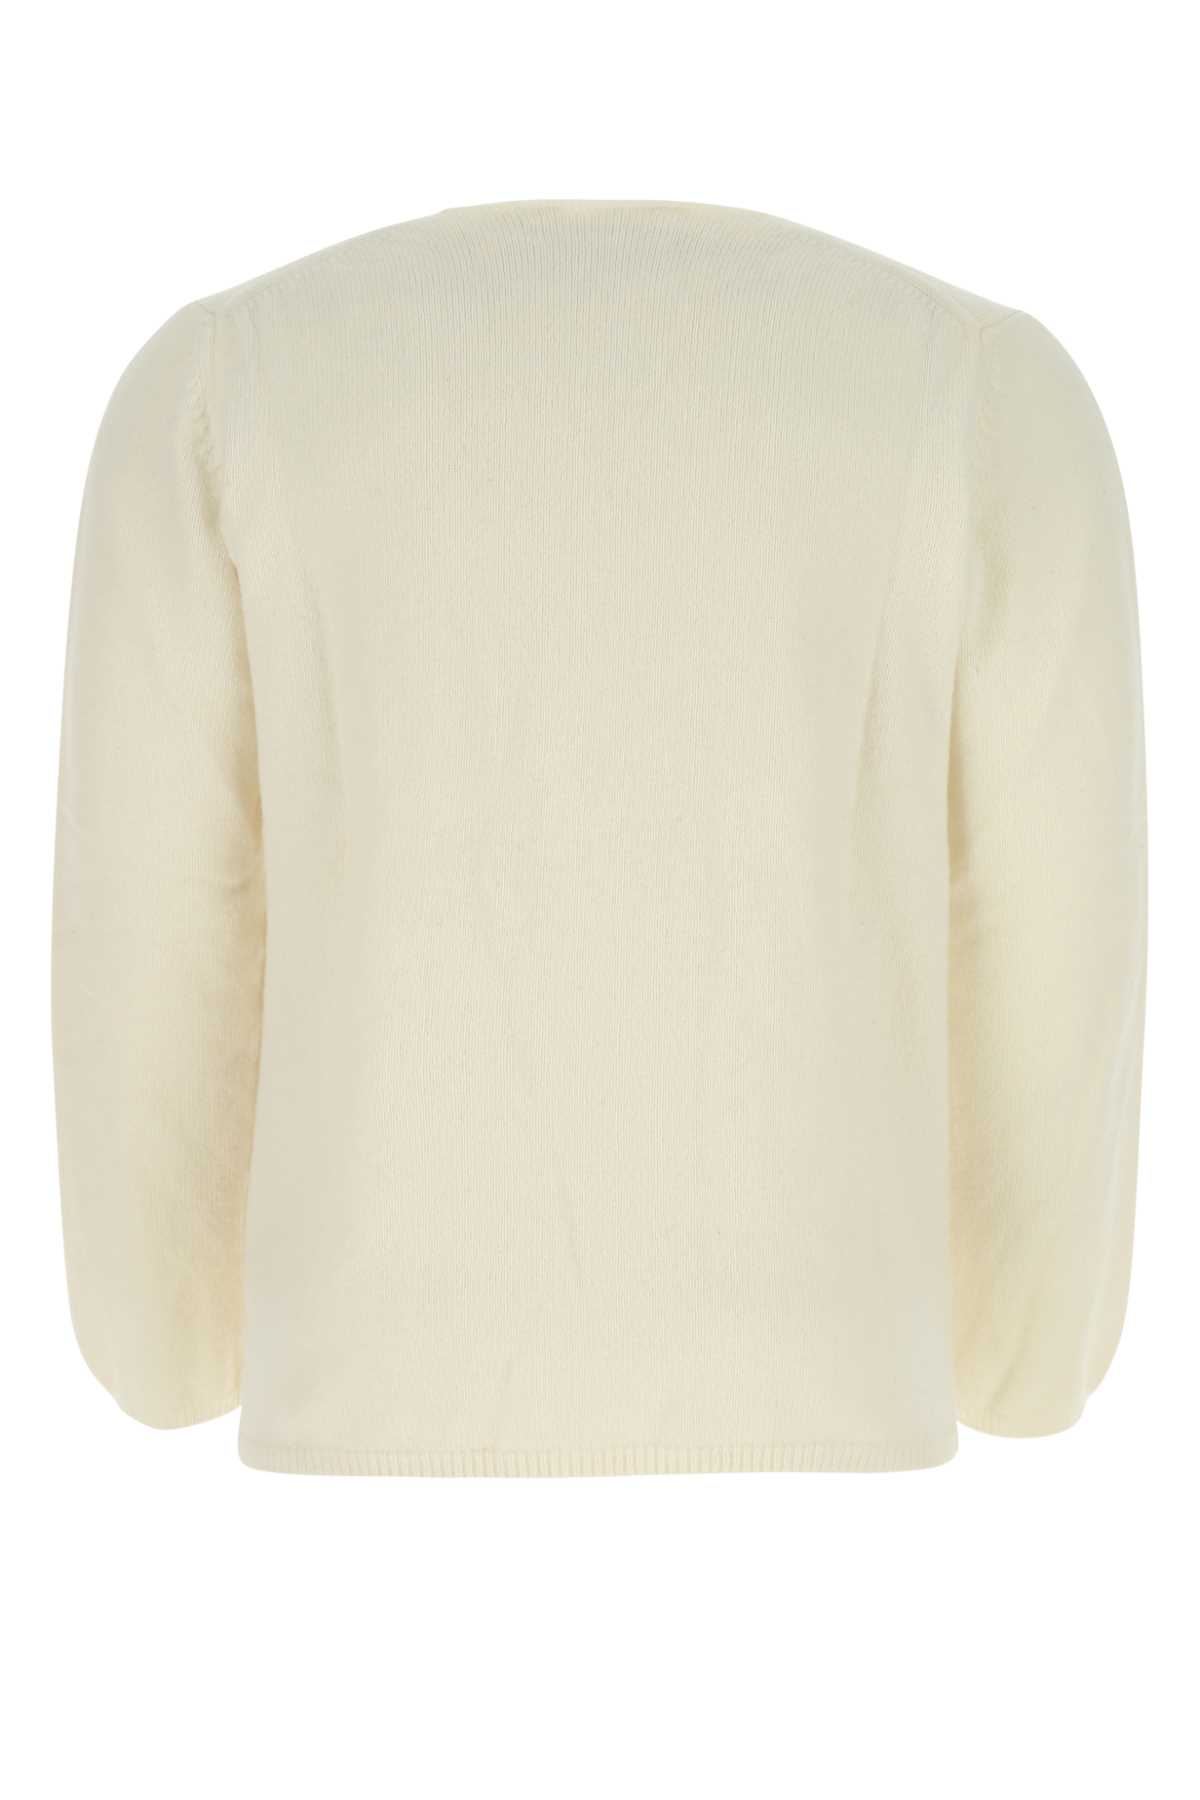 Comme Des Garçons Shirt Ivory Wool Blend Sweater In Camel